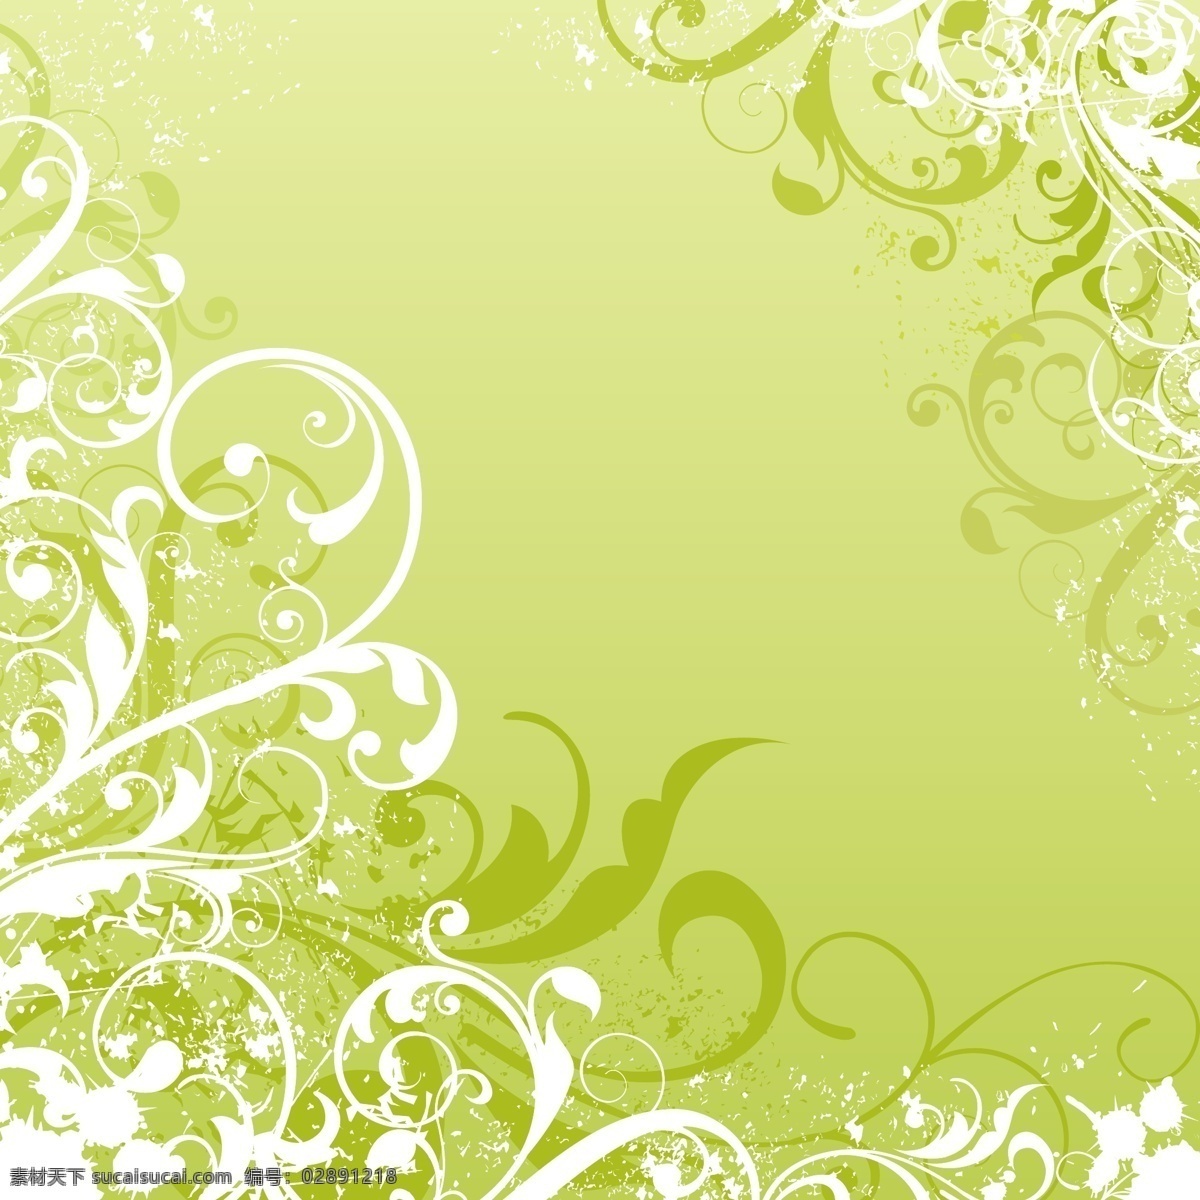 摘要背景设计 背景 抽象背景 抽象 树叶 绿色 绿色背景 墙纸 颜色 丰富多彩 背景绿色 绿色的叶子 多彩的背景 背景色 彩色